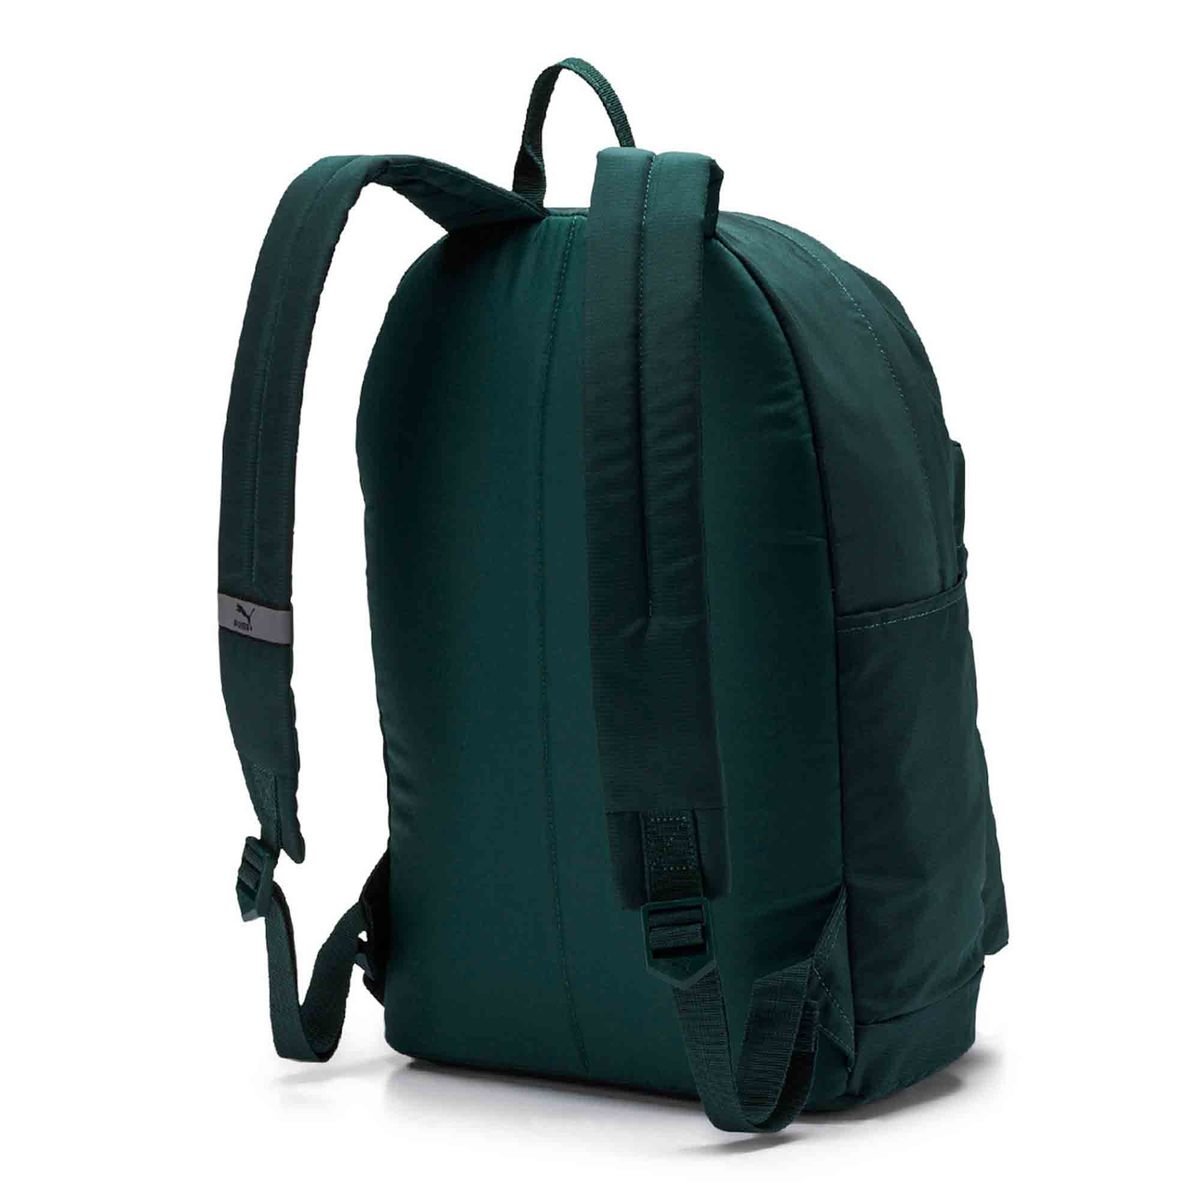 PUMA Originals Backpack Green 07479915